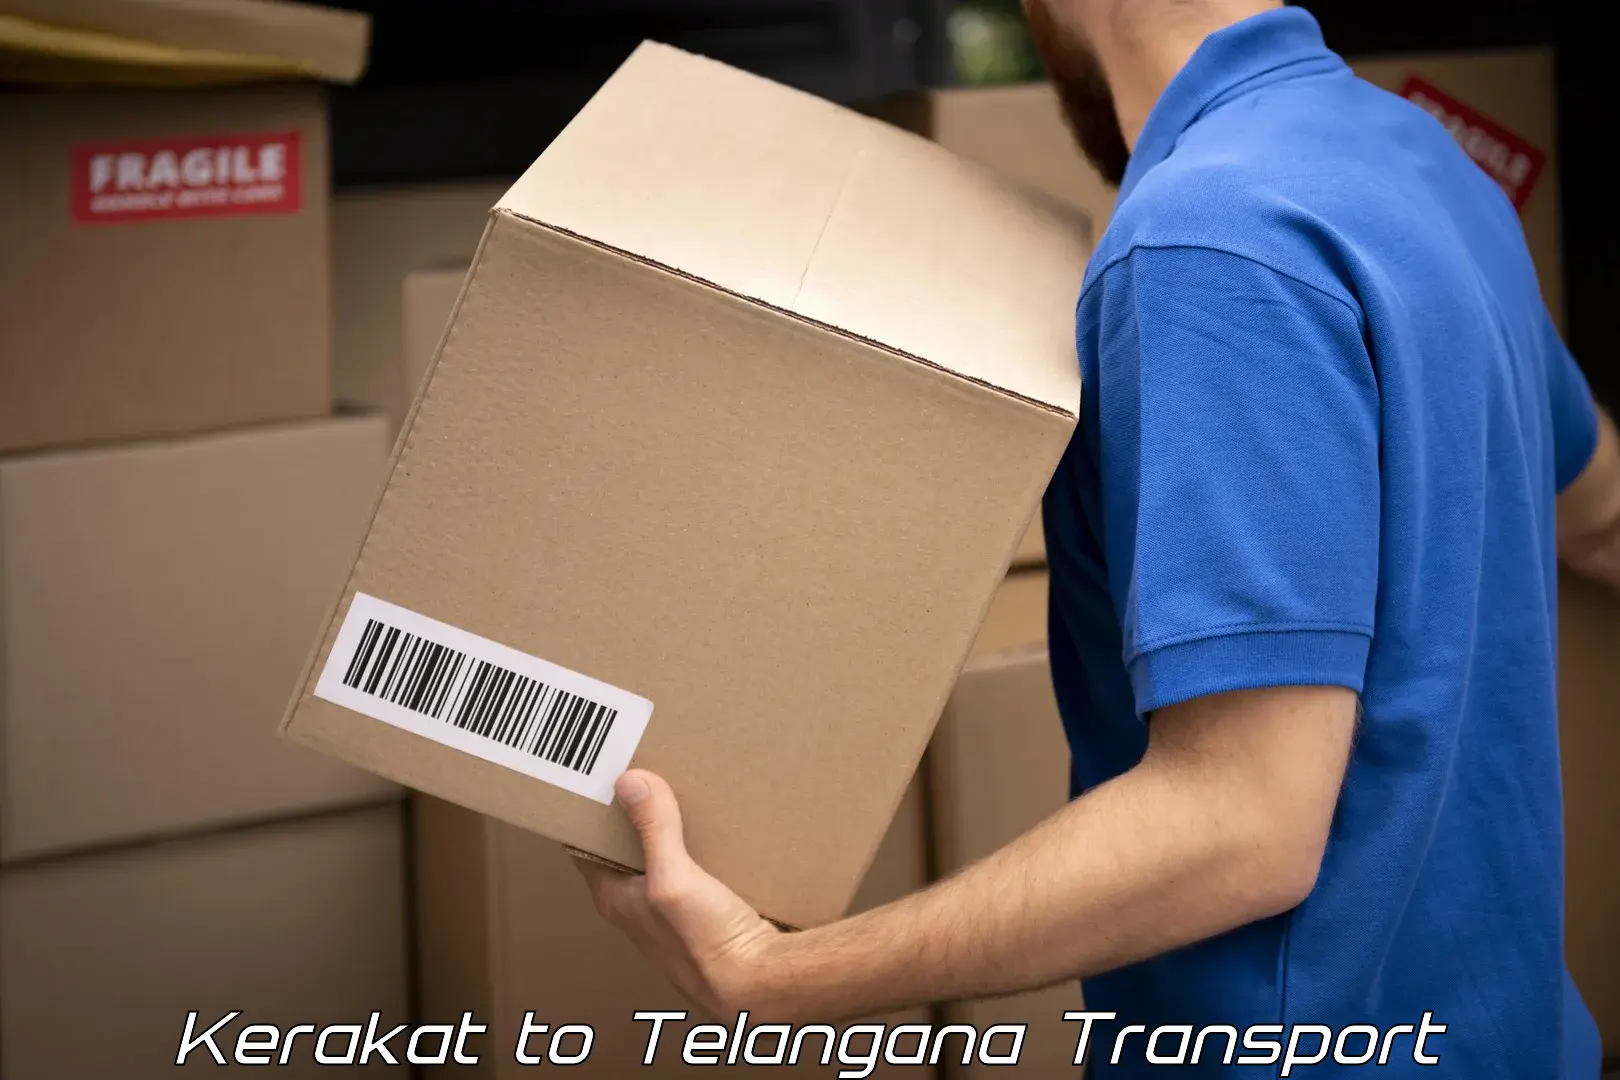 India truck logistics services Kerakat to Jangaon